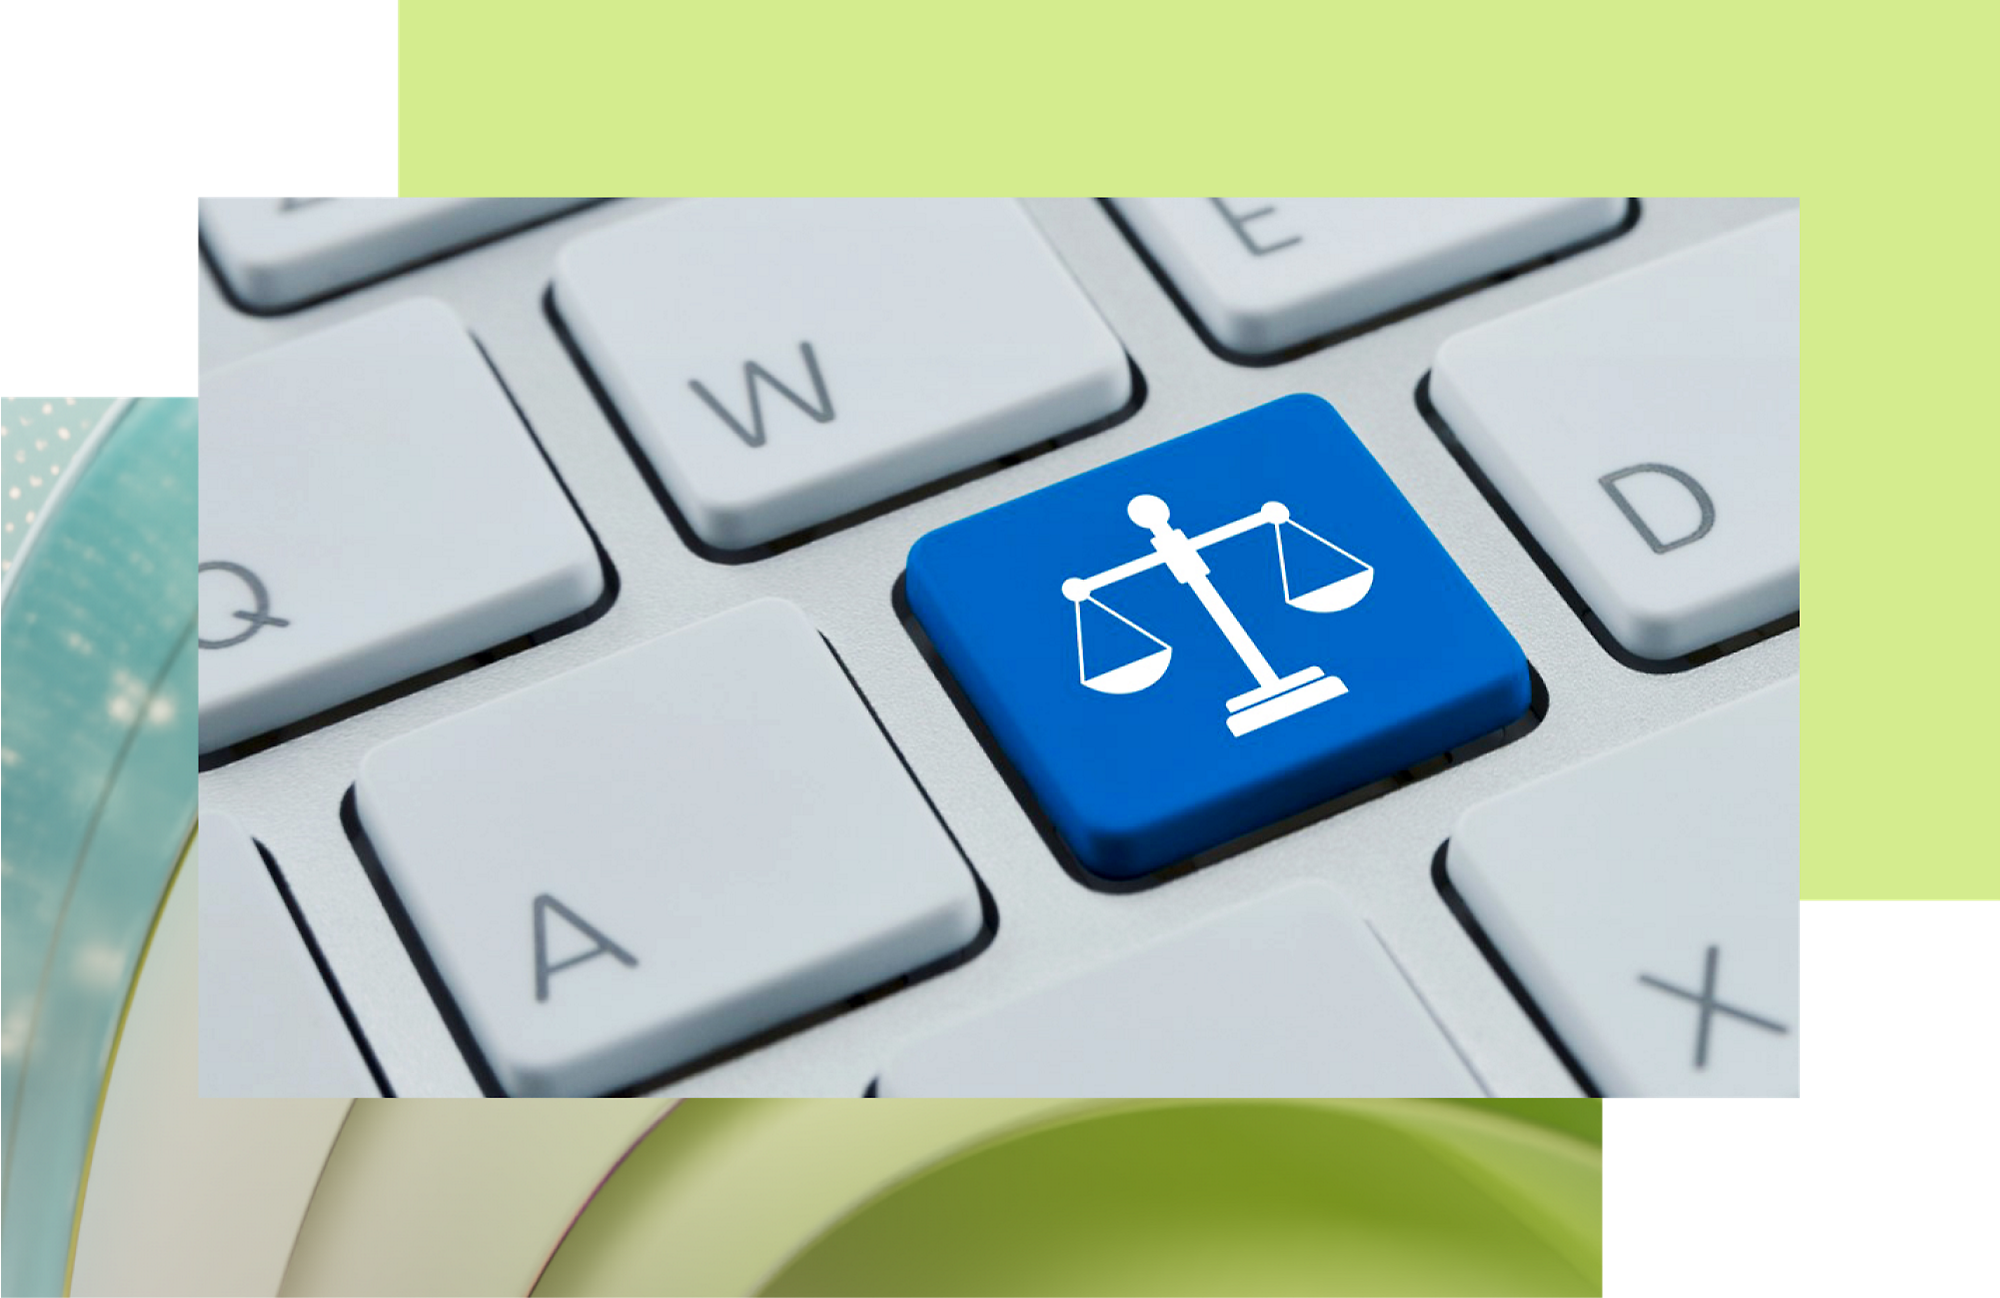 O tastă albastră cu pictograma albă a balanței dreptății pe o tastatură, simbolizând asistența legală sau tehnologia orientată spre justiție.